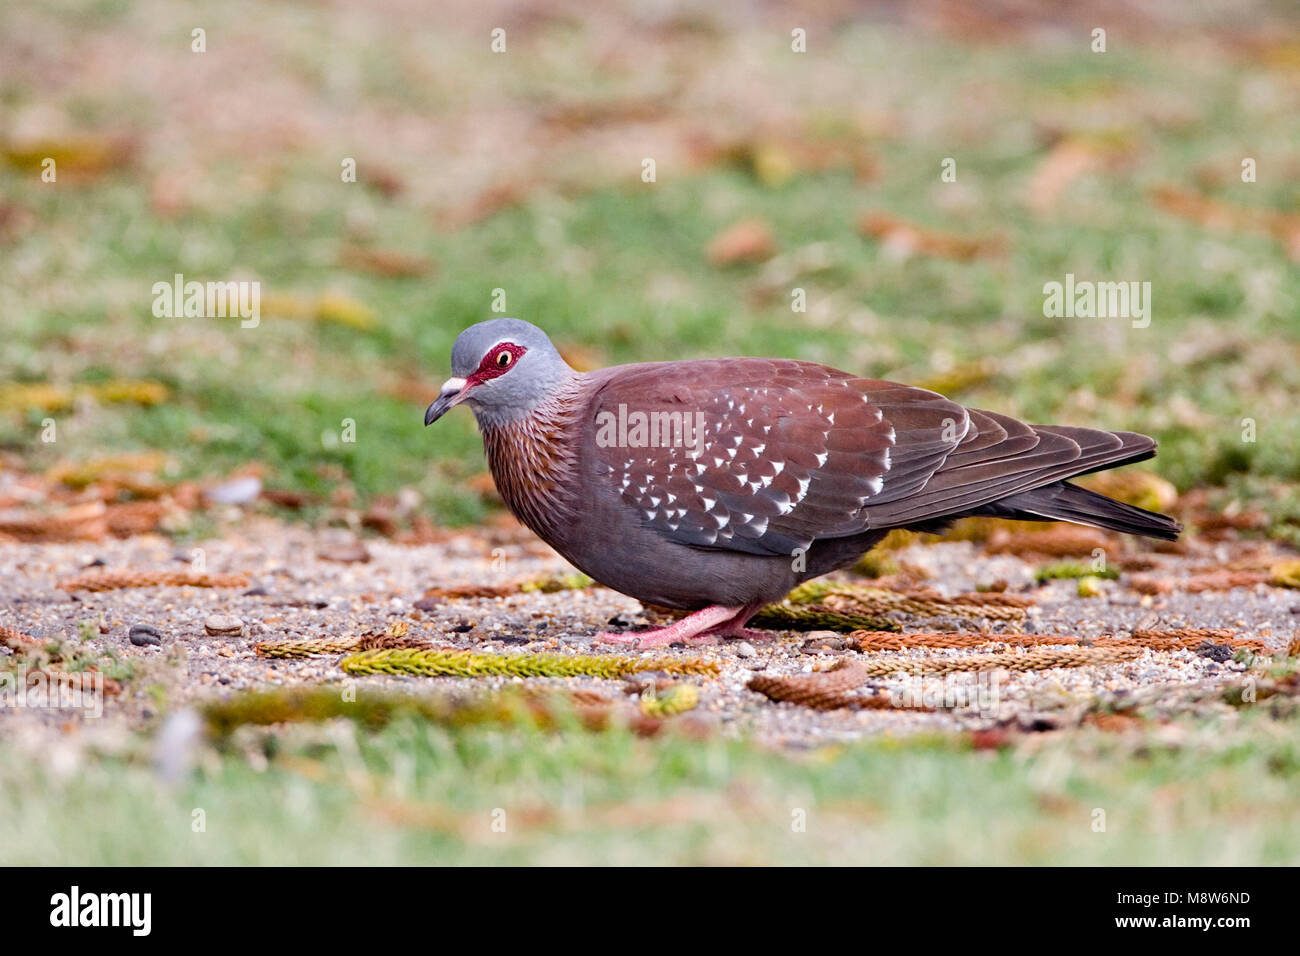 Gespikkelde Duif foeragerend Op de Grond; African Rock Pigeon nahrungssuche am Boden Stockfoto